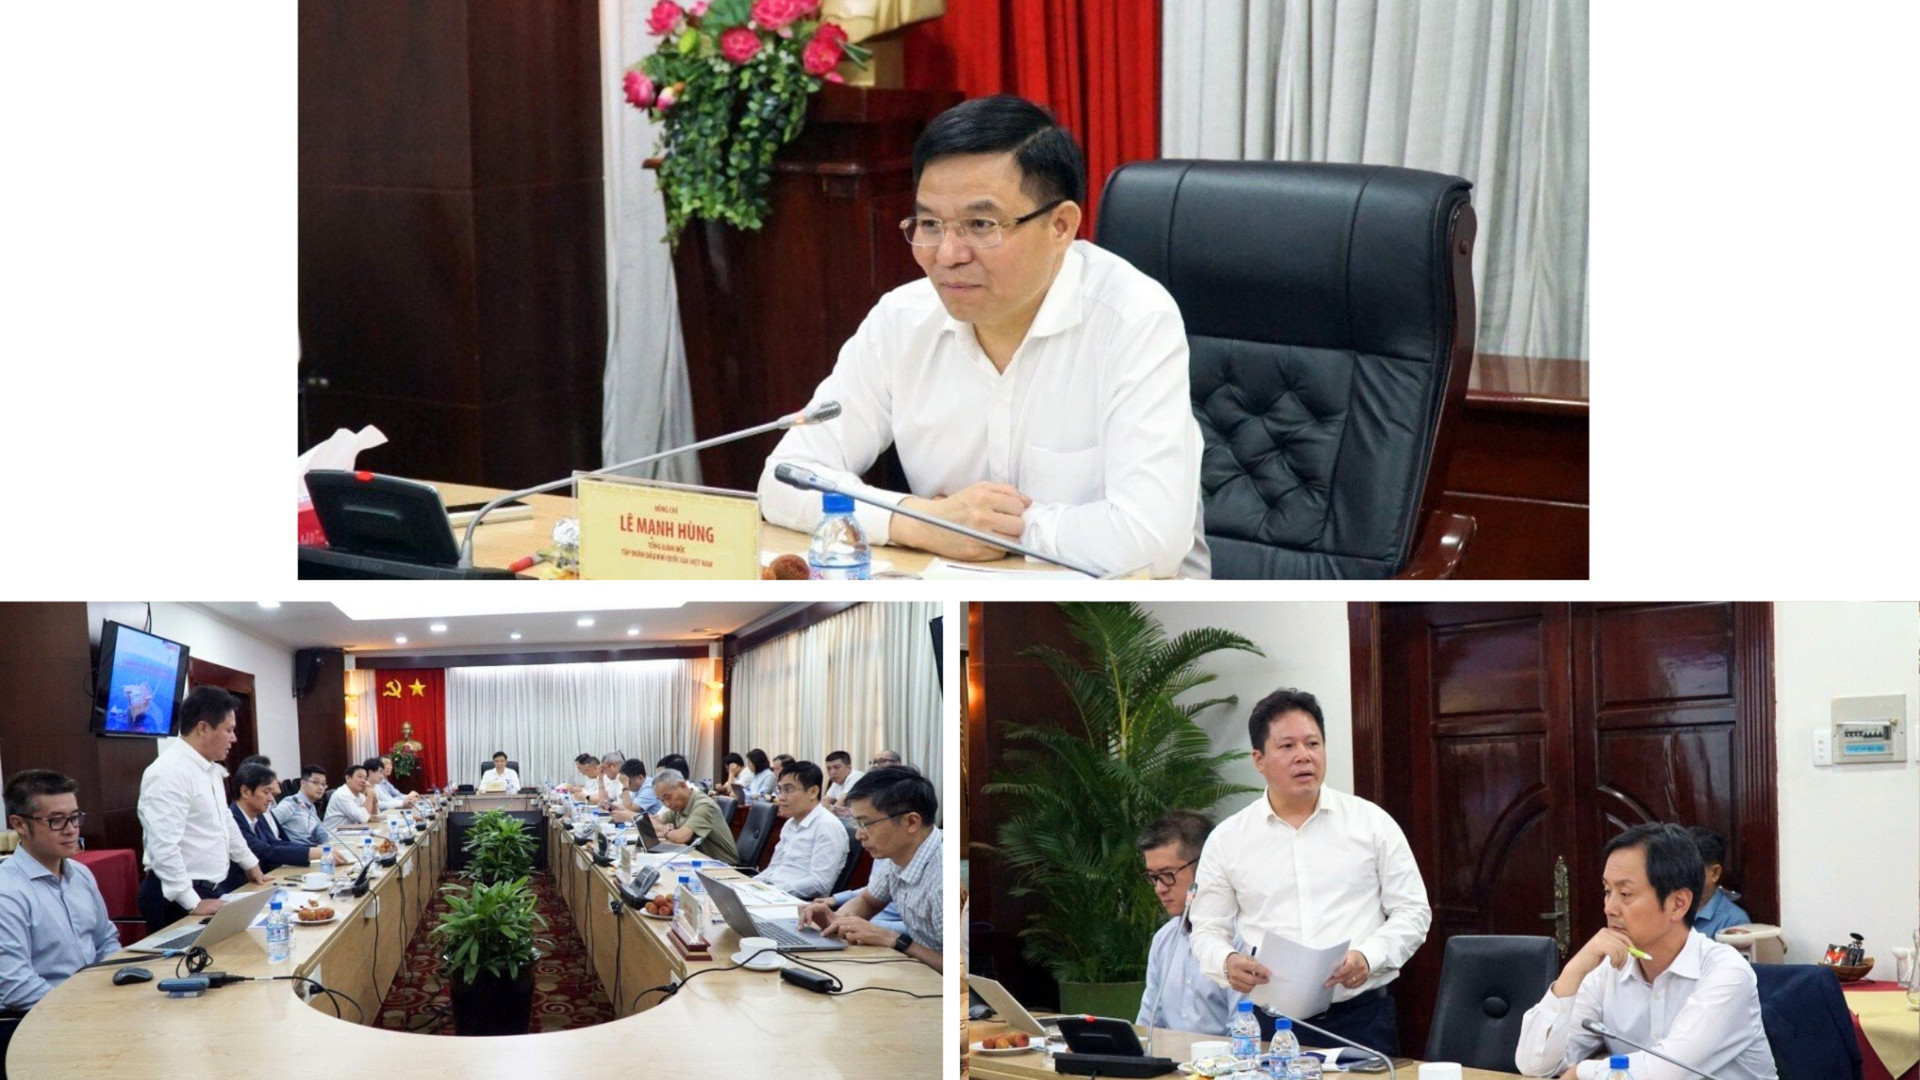 Tổng giám đốc Petrovietnam Lê Mạnh Hùng định hướng giải pháp nâng cao sản lượng Cửu Long JOC.